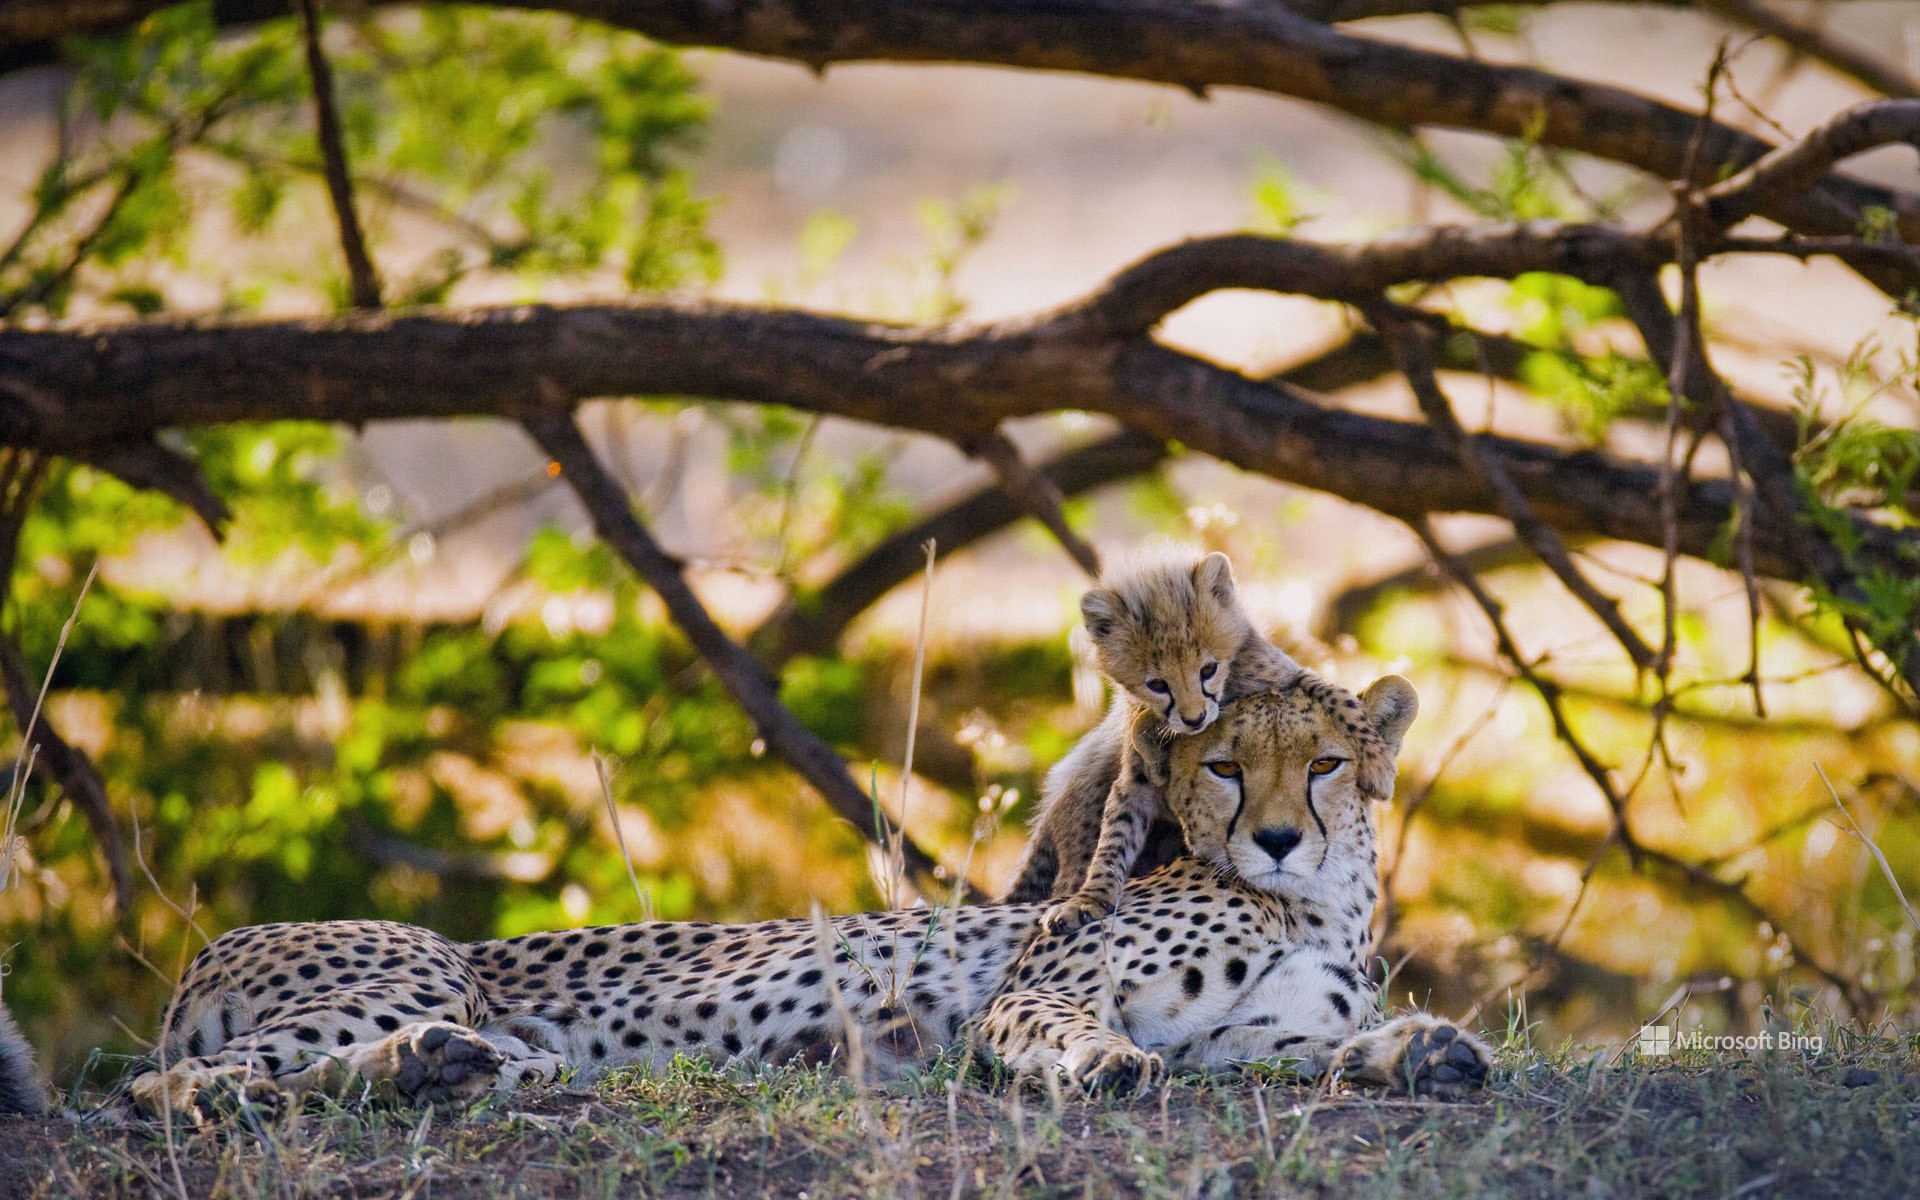 Mother cheetah and cub, Maasai Mara National Reserve, Kenya